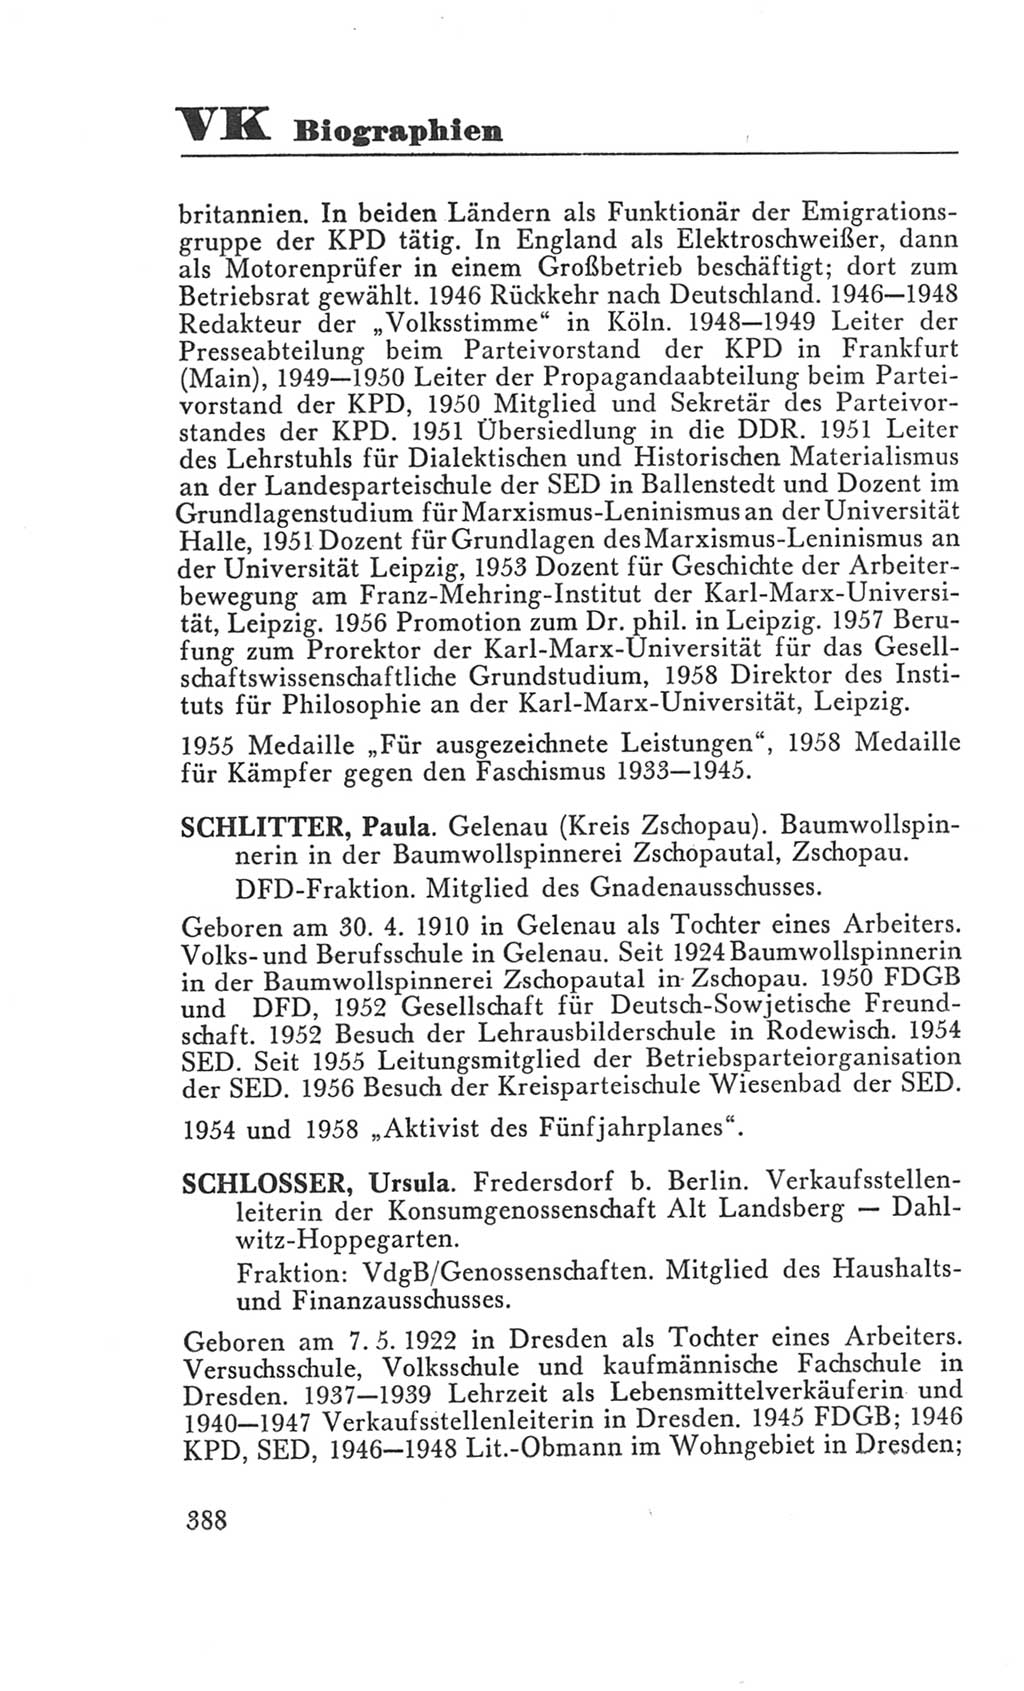 Handbuch der Volkskammer (VK) der Deutschen Demokratischen Republik (DDR), 3. Wahlperiode 1958-1963, Seite 388 (Hdb. VK. DDR 3. WP. 1958-1963, S. 388)